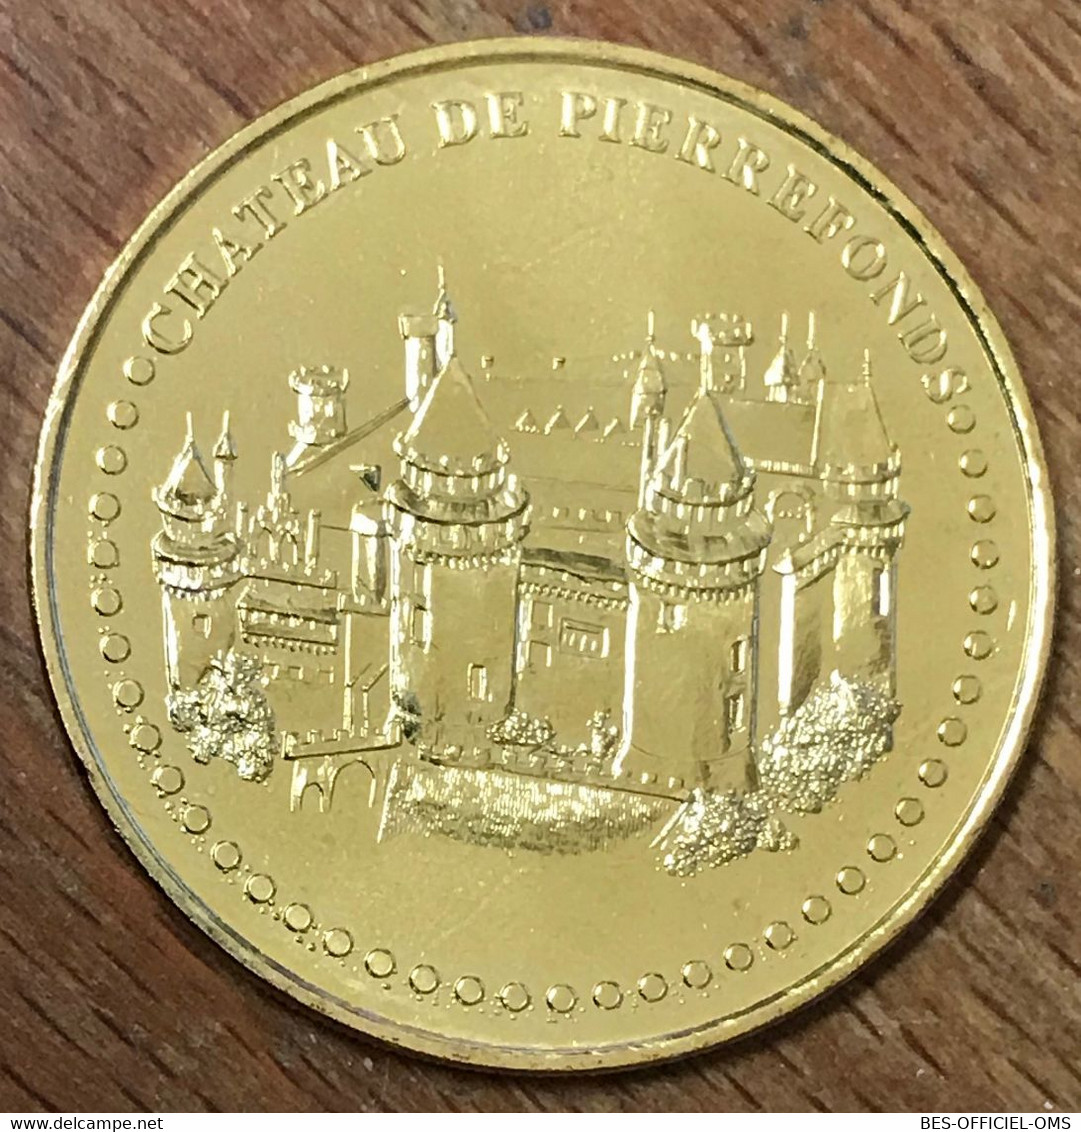 60 CHÂTEAU DE PIERREFONDS MDP 2016 MÉDAILLE SOUVENIR MONNAIE DE PARIS JETON TOURISTIQUE MEDALS COINS TOKENS - 2016